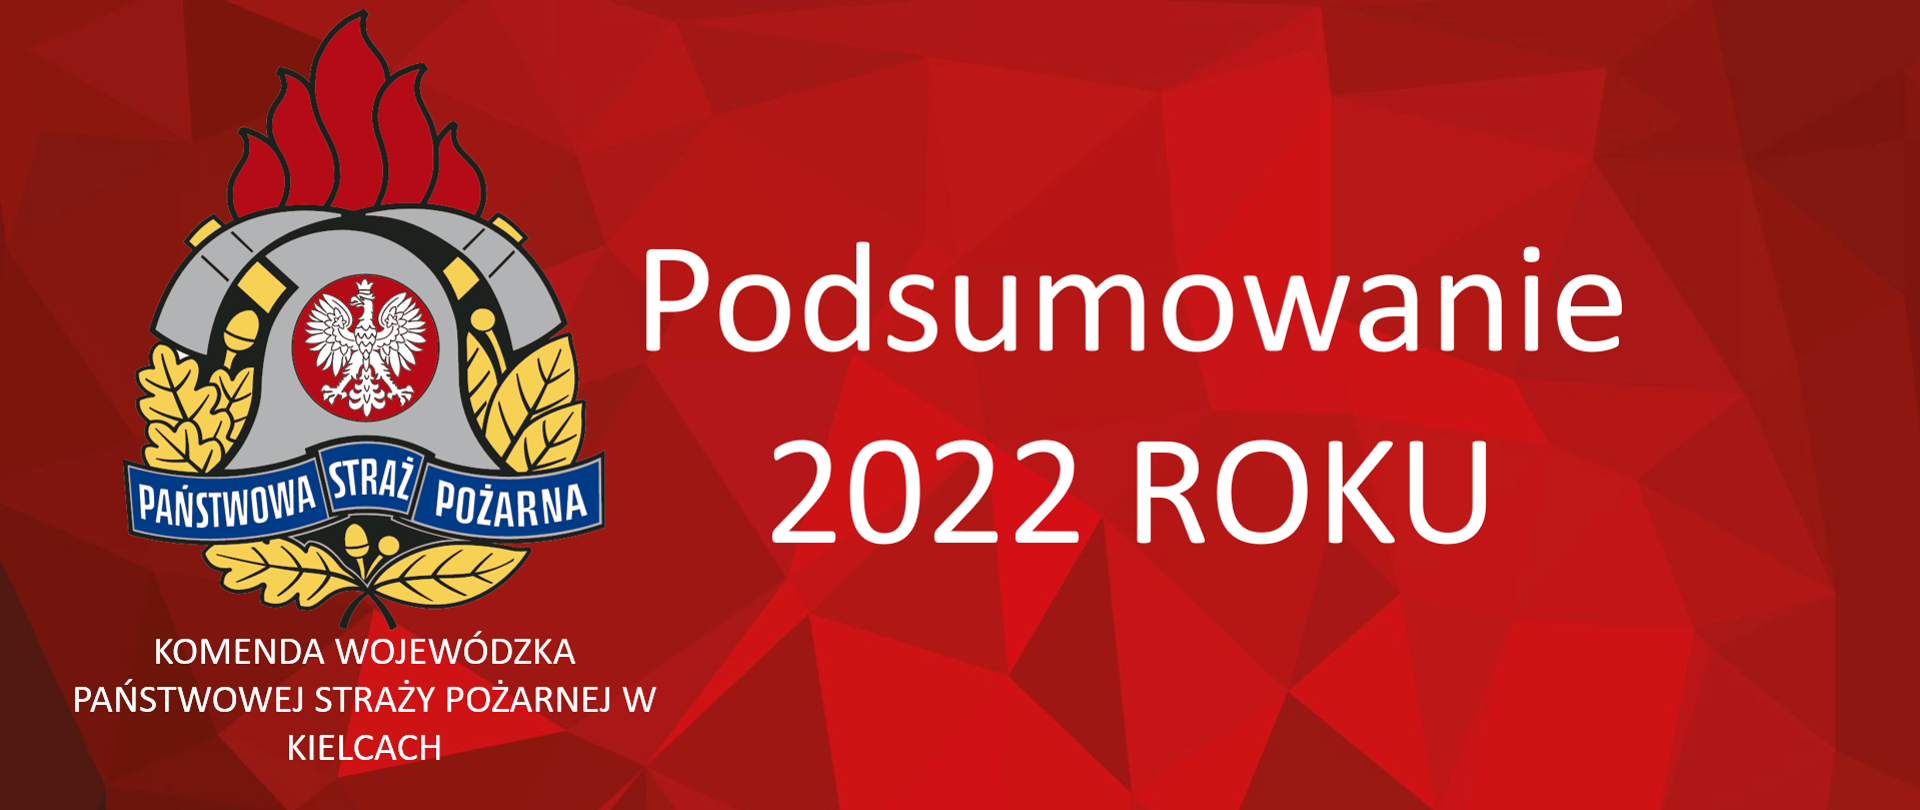 Na zdjęciu na czerwonym tle widzimy logo PSP podpisane Komenda Wojewódzka Państwowej Straży Pożarnej w Kielcach oraz napis Podsumowanie 2022 roku 